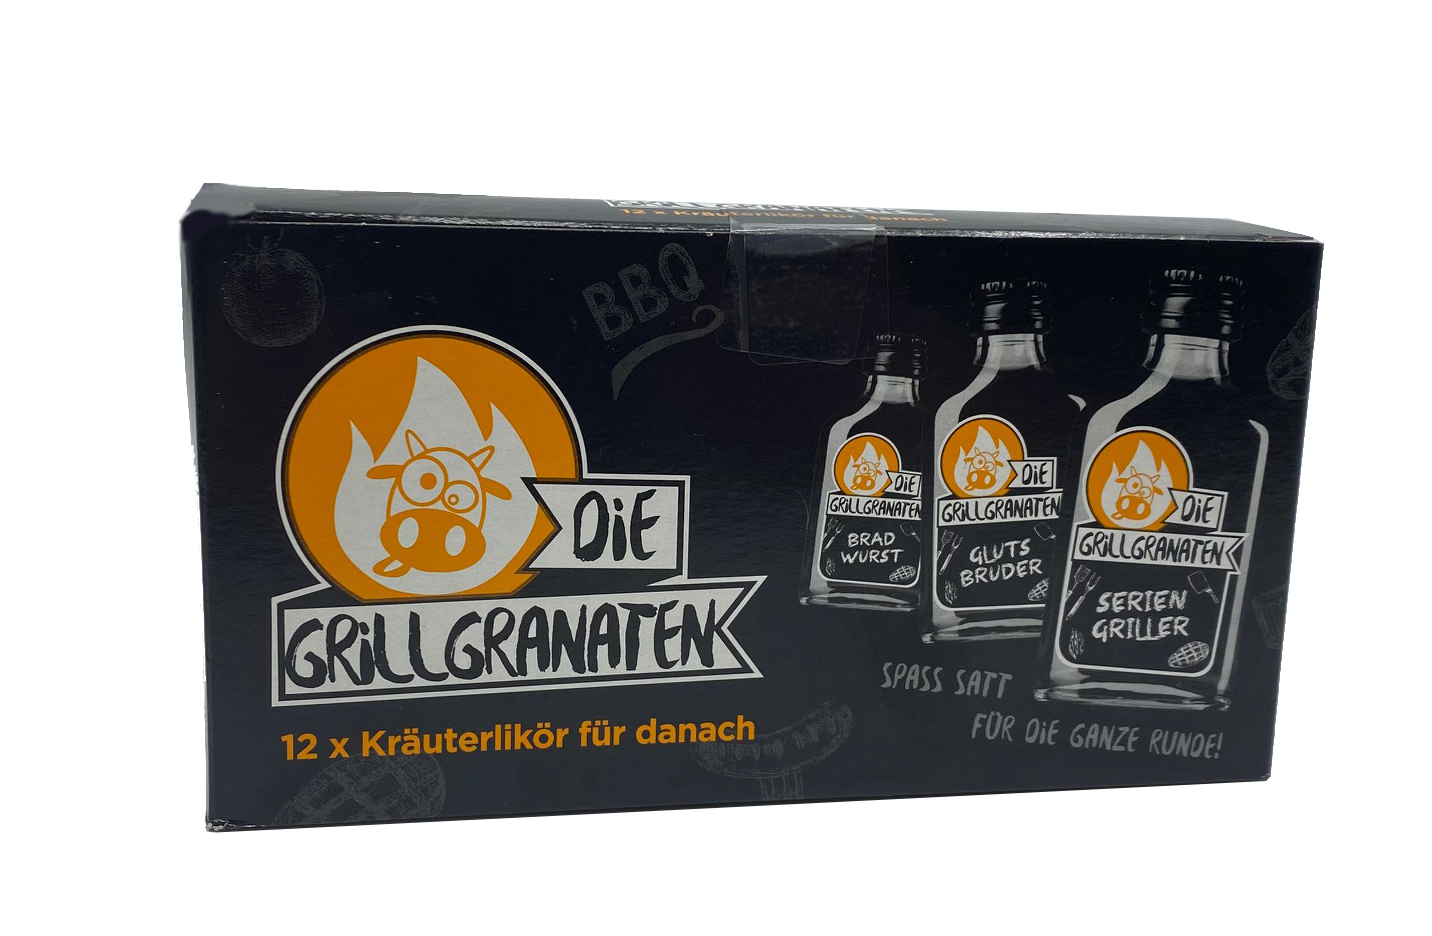 Die Grillgranaten Box - 12x Grillgranaten Kräuterlikör für danach (12x0,02l) 30%vol.